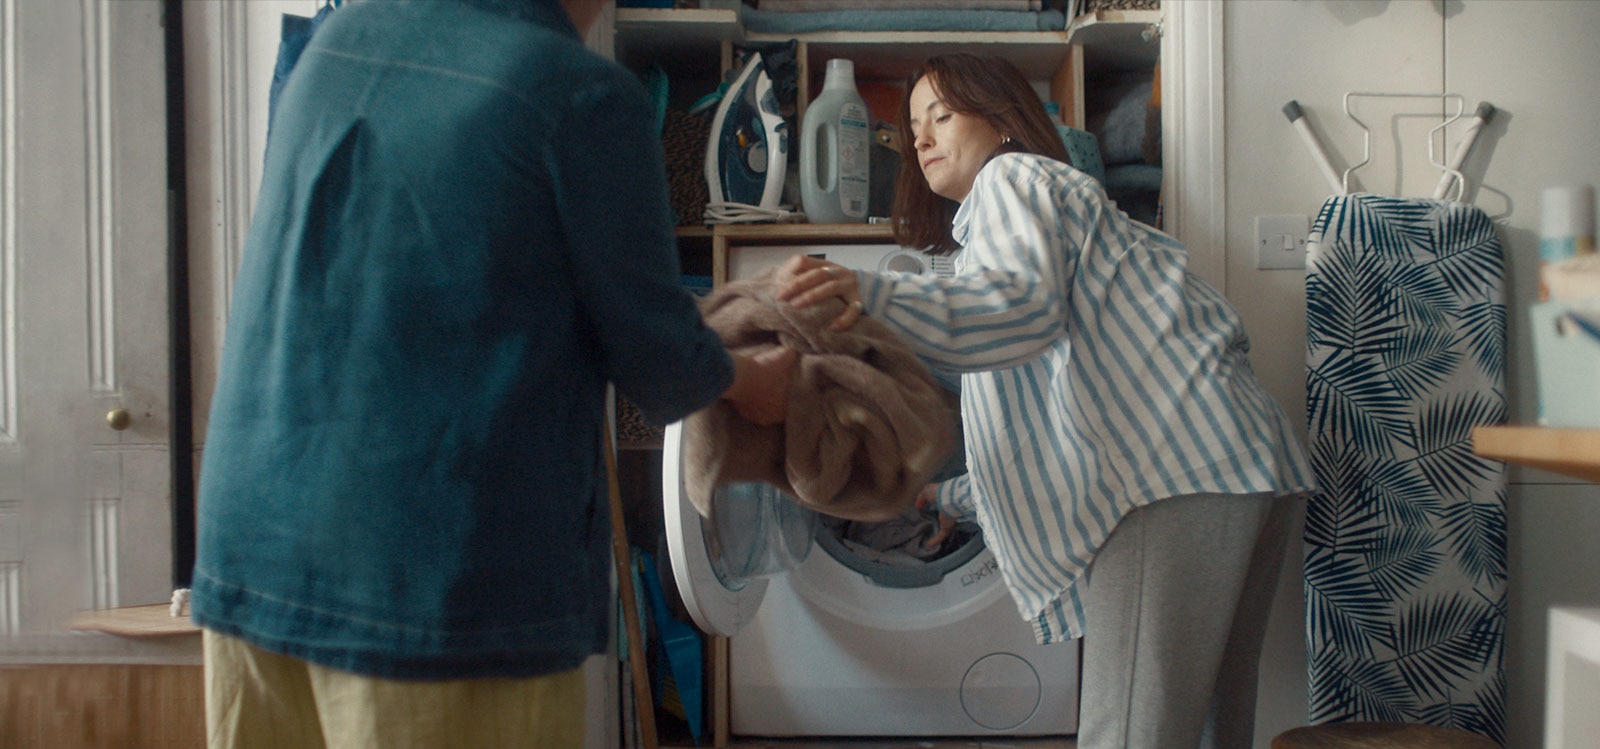 Moteris išima iš skalbimo mašinos skalbinius ir paduoda juos mamai.